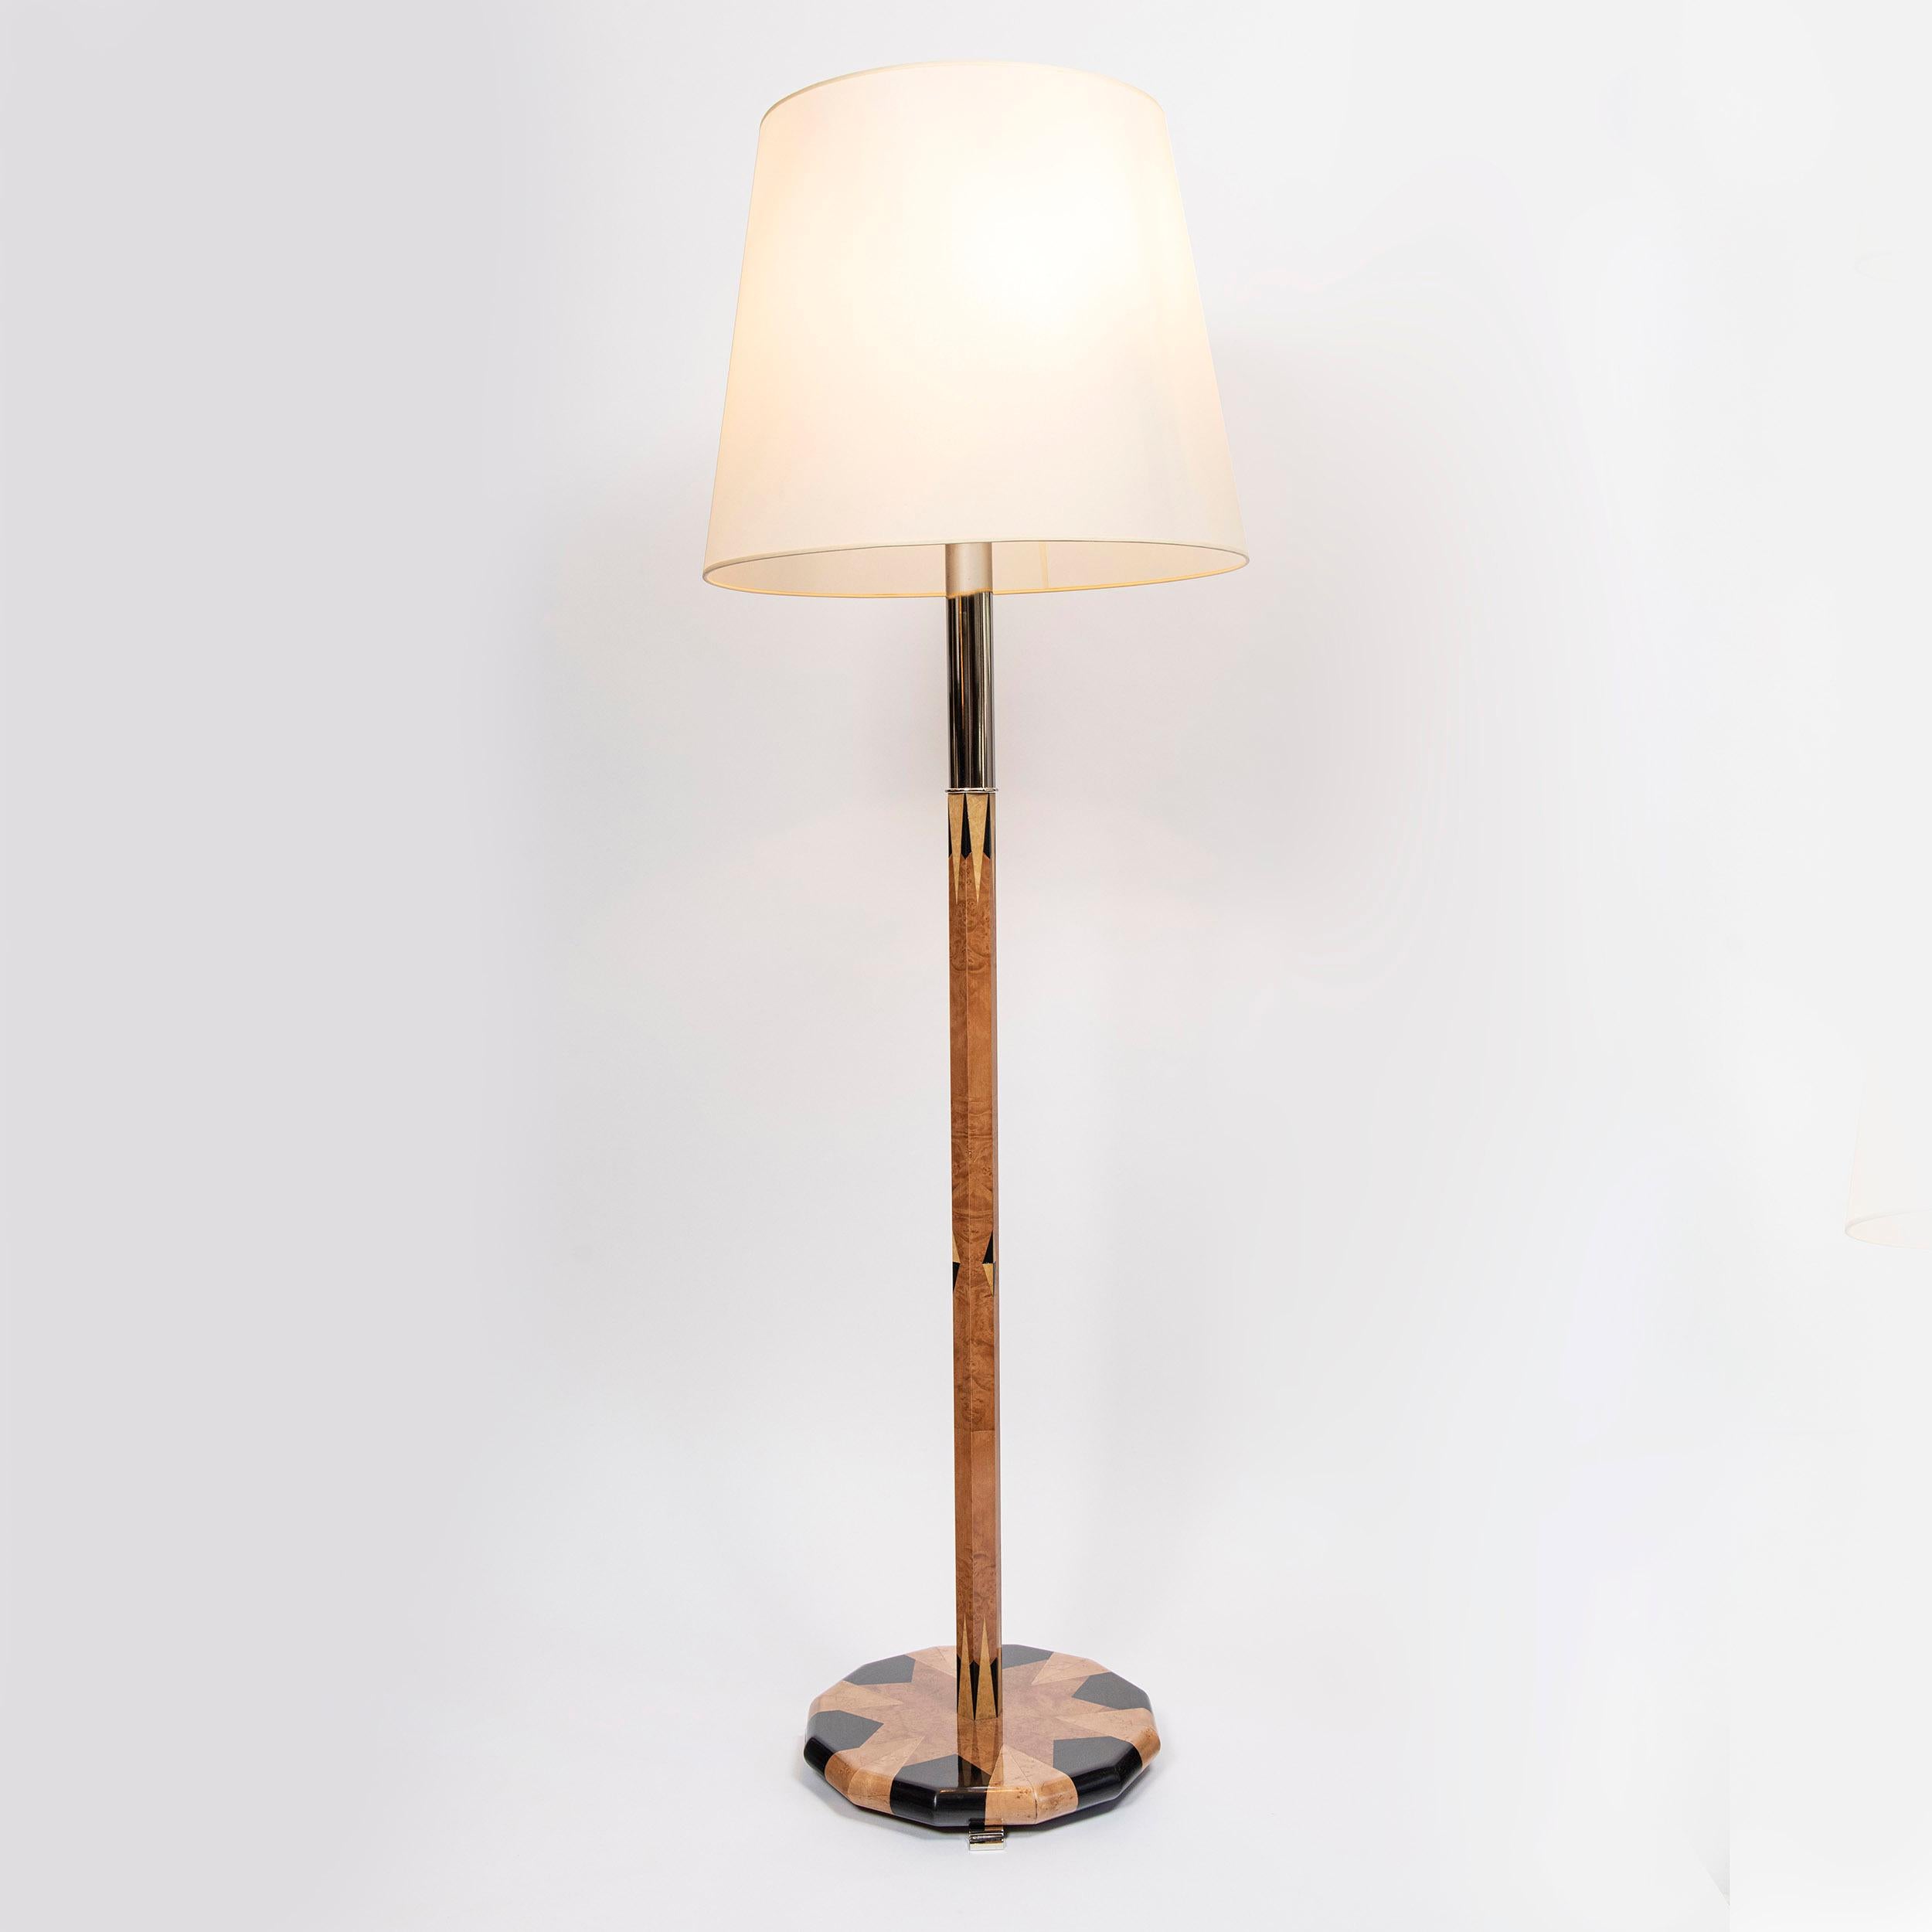 Satz von sechs Stehlampen aus Holz mit Intarsien und verchromtem Metall. Frankreich.
Der Lampenschirm ist nicht inbegriffen.